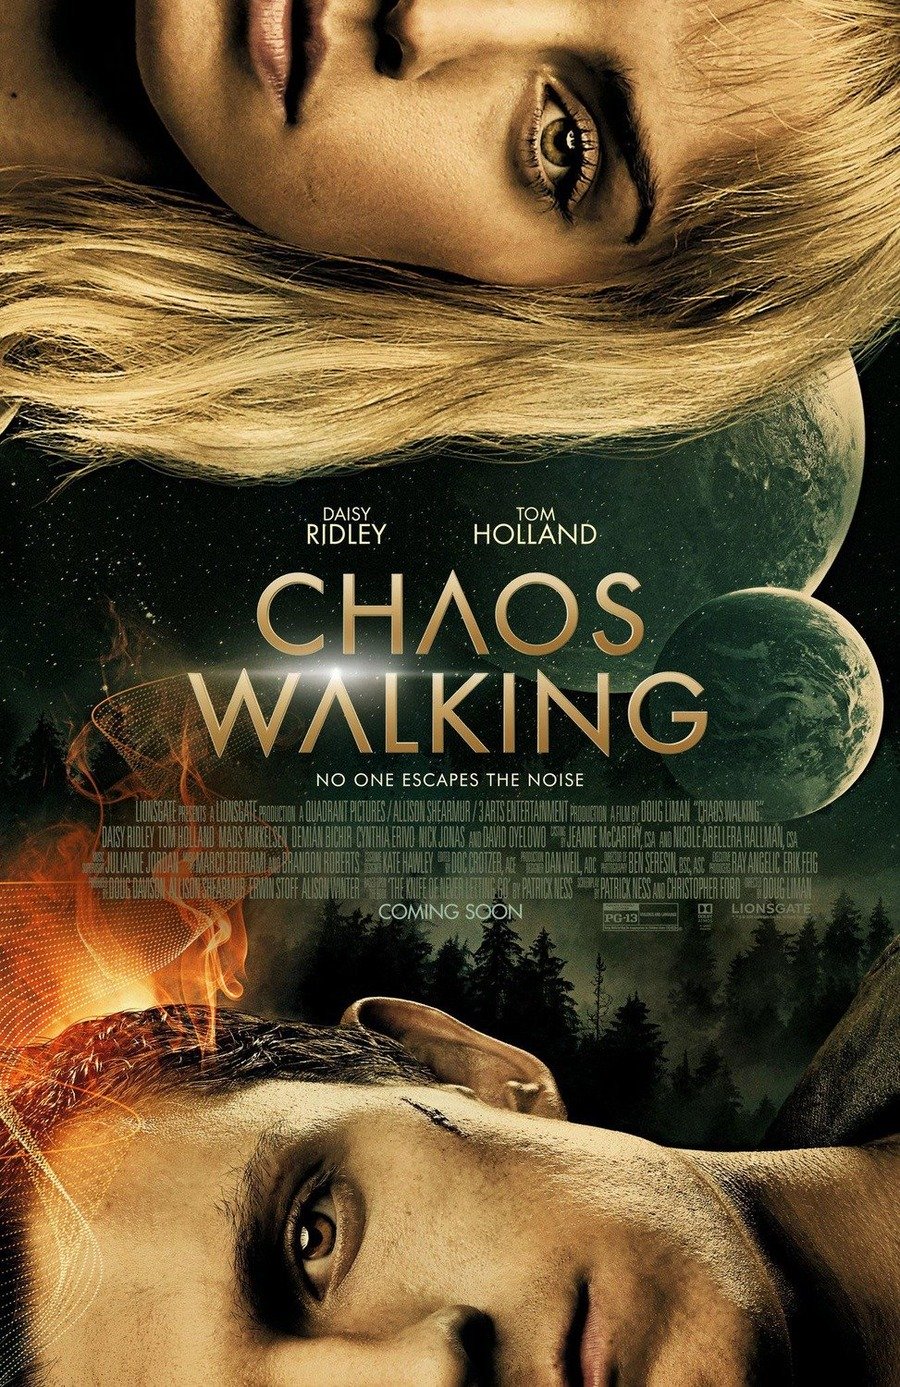 https://movieplayer.it/film/chaos-walking_33164/